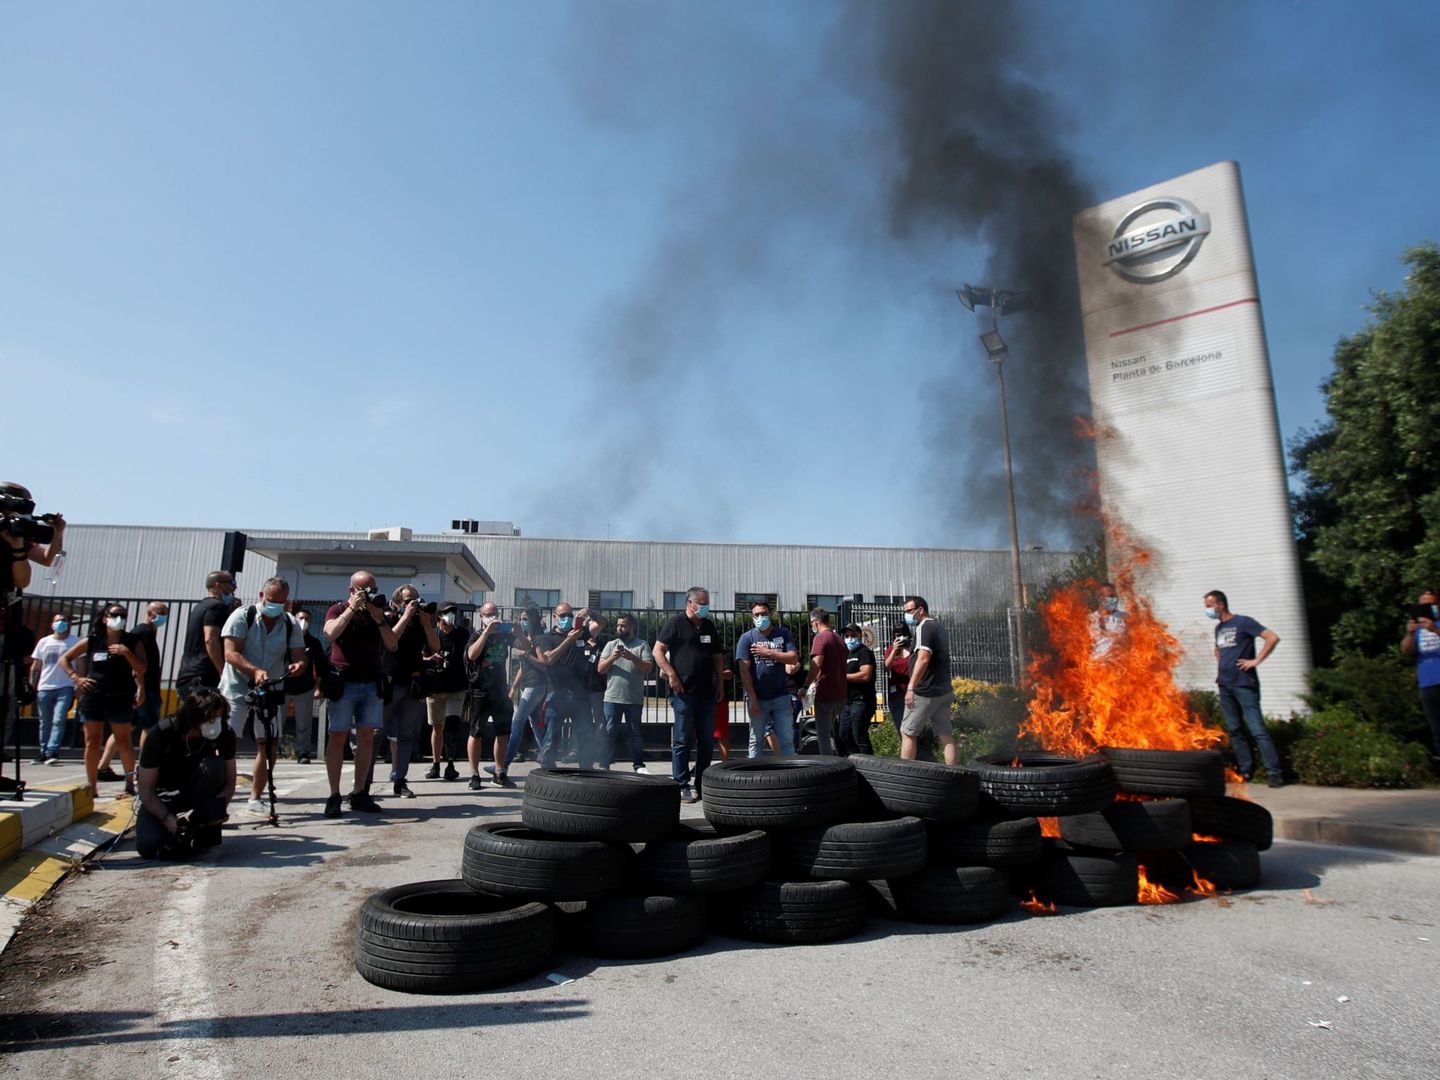 Trabajadores de Nissan queman neumáticos en las protestas. (EFE)